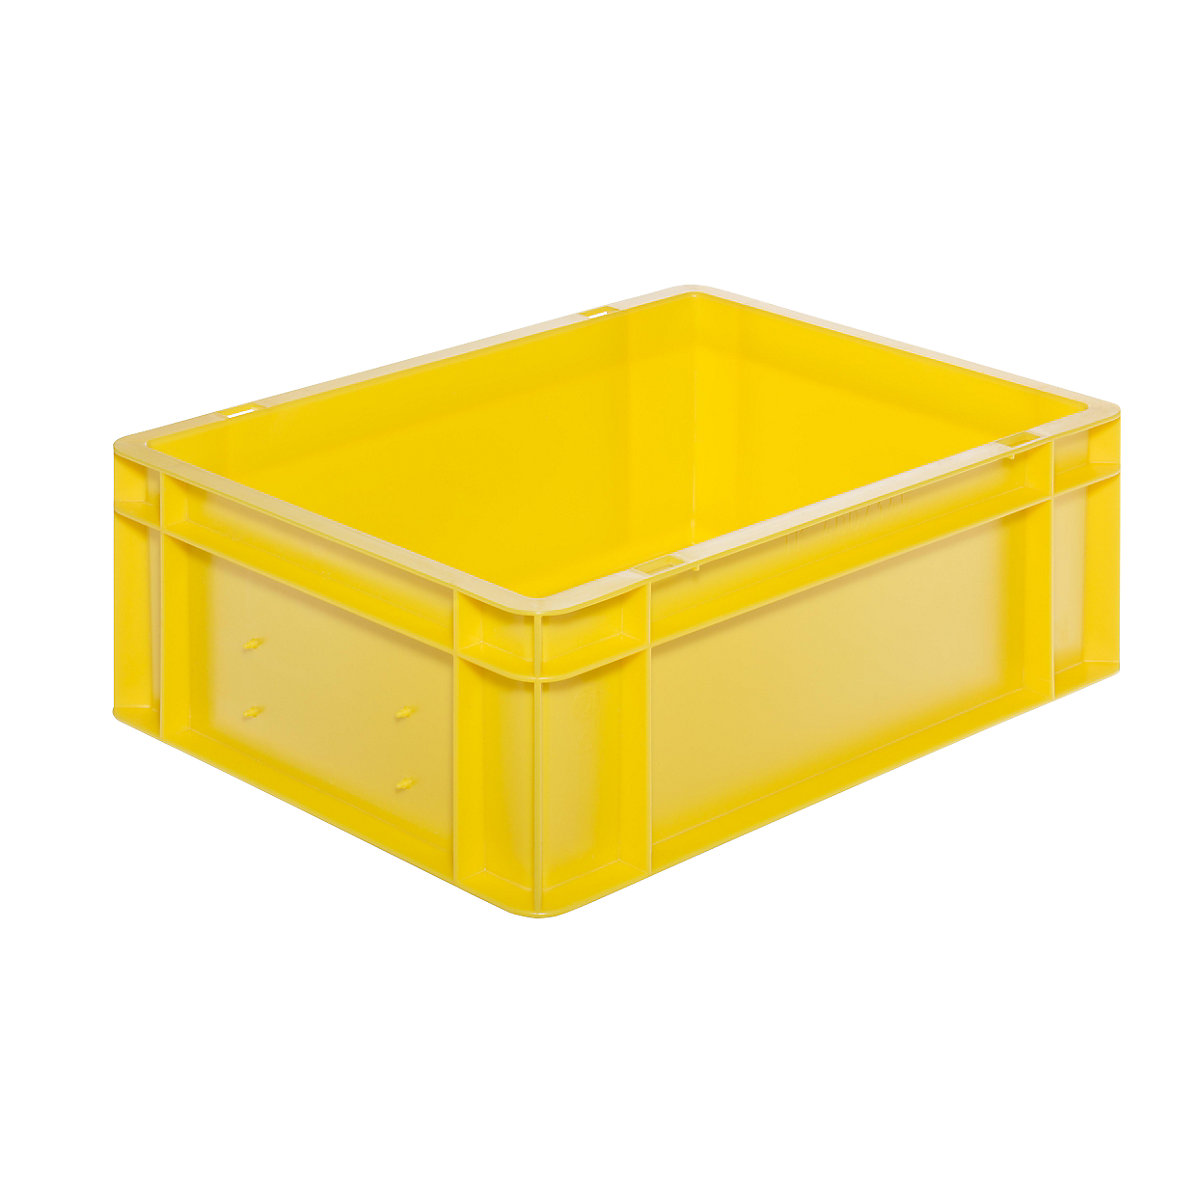 Euro-Format-Stapelbehälter, Wände und Boden geschlossen, LxBxH 400 x 300 x 145 mm, gelb, VE 5 Stk